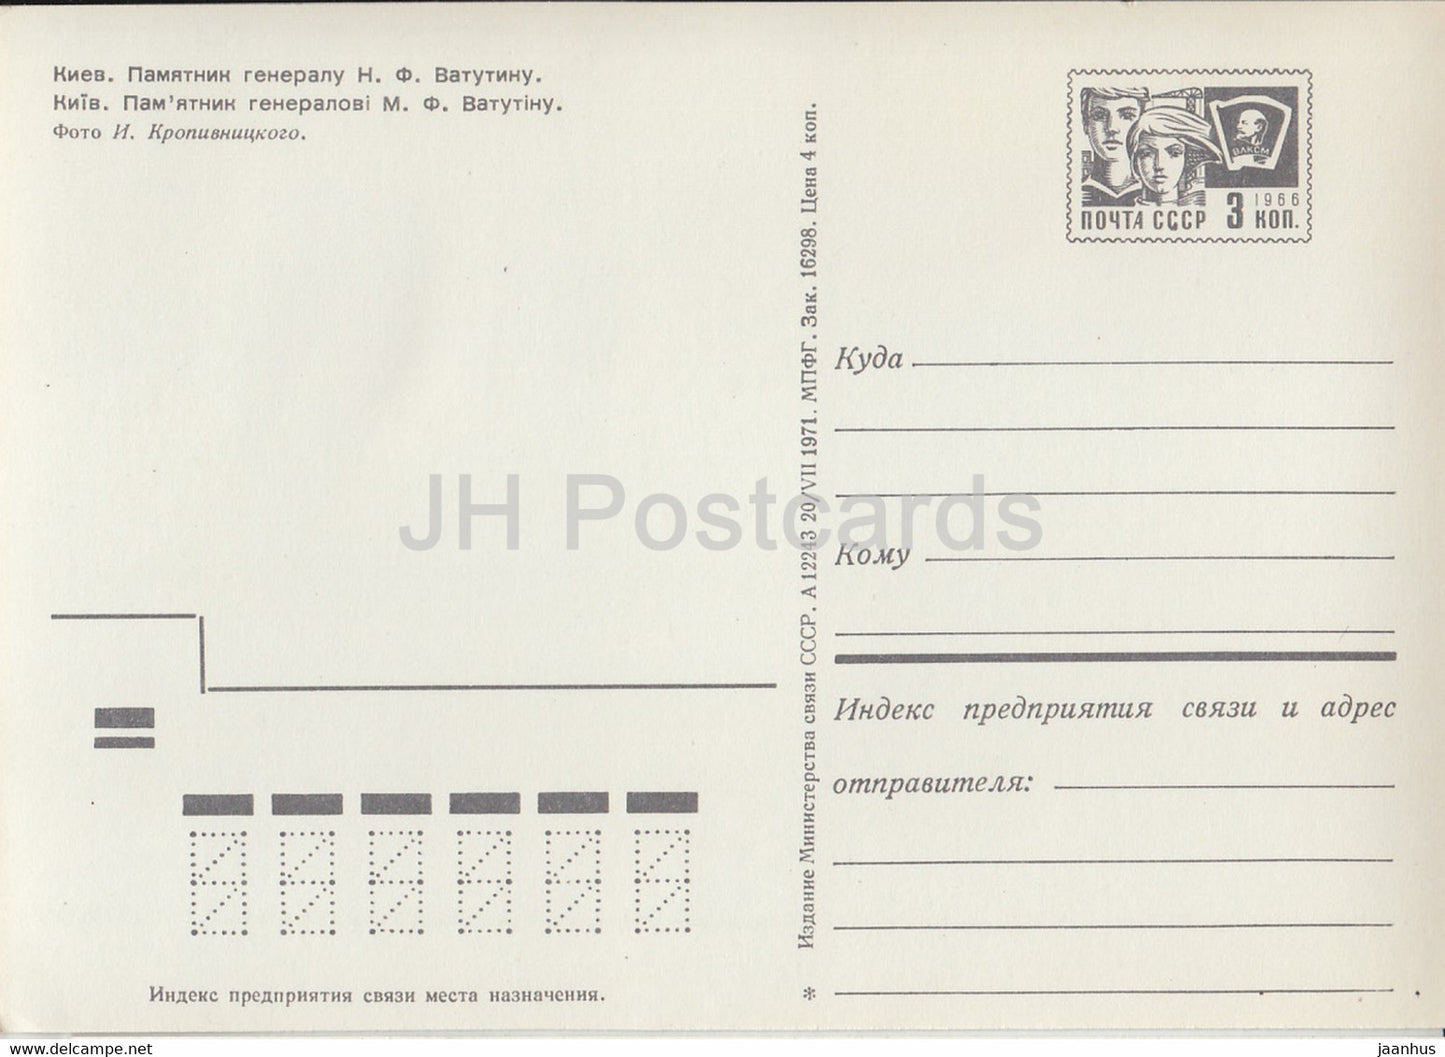 Kyiv - Kiev - monument to general Vatutin - postal stationery - 1971 - Ukraine USSR - unused